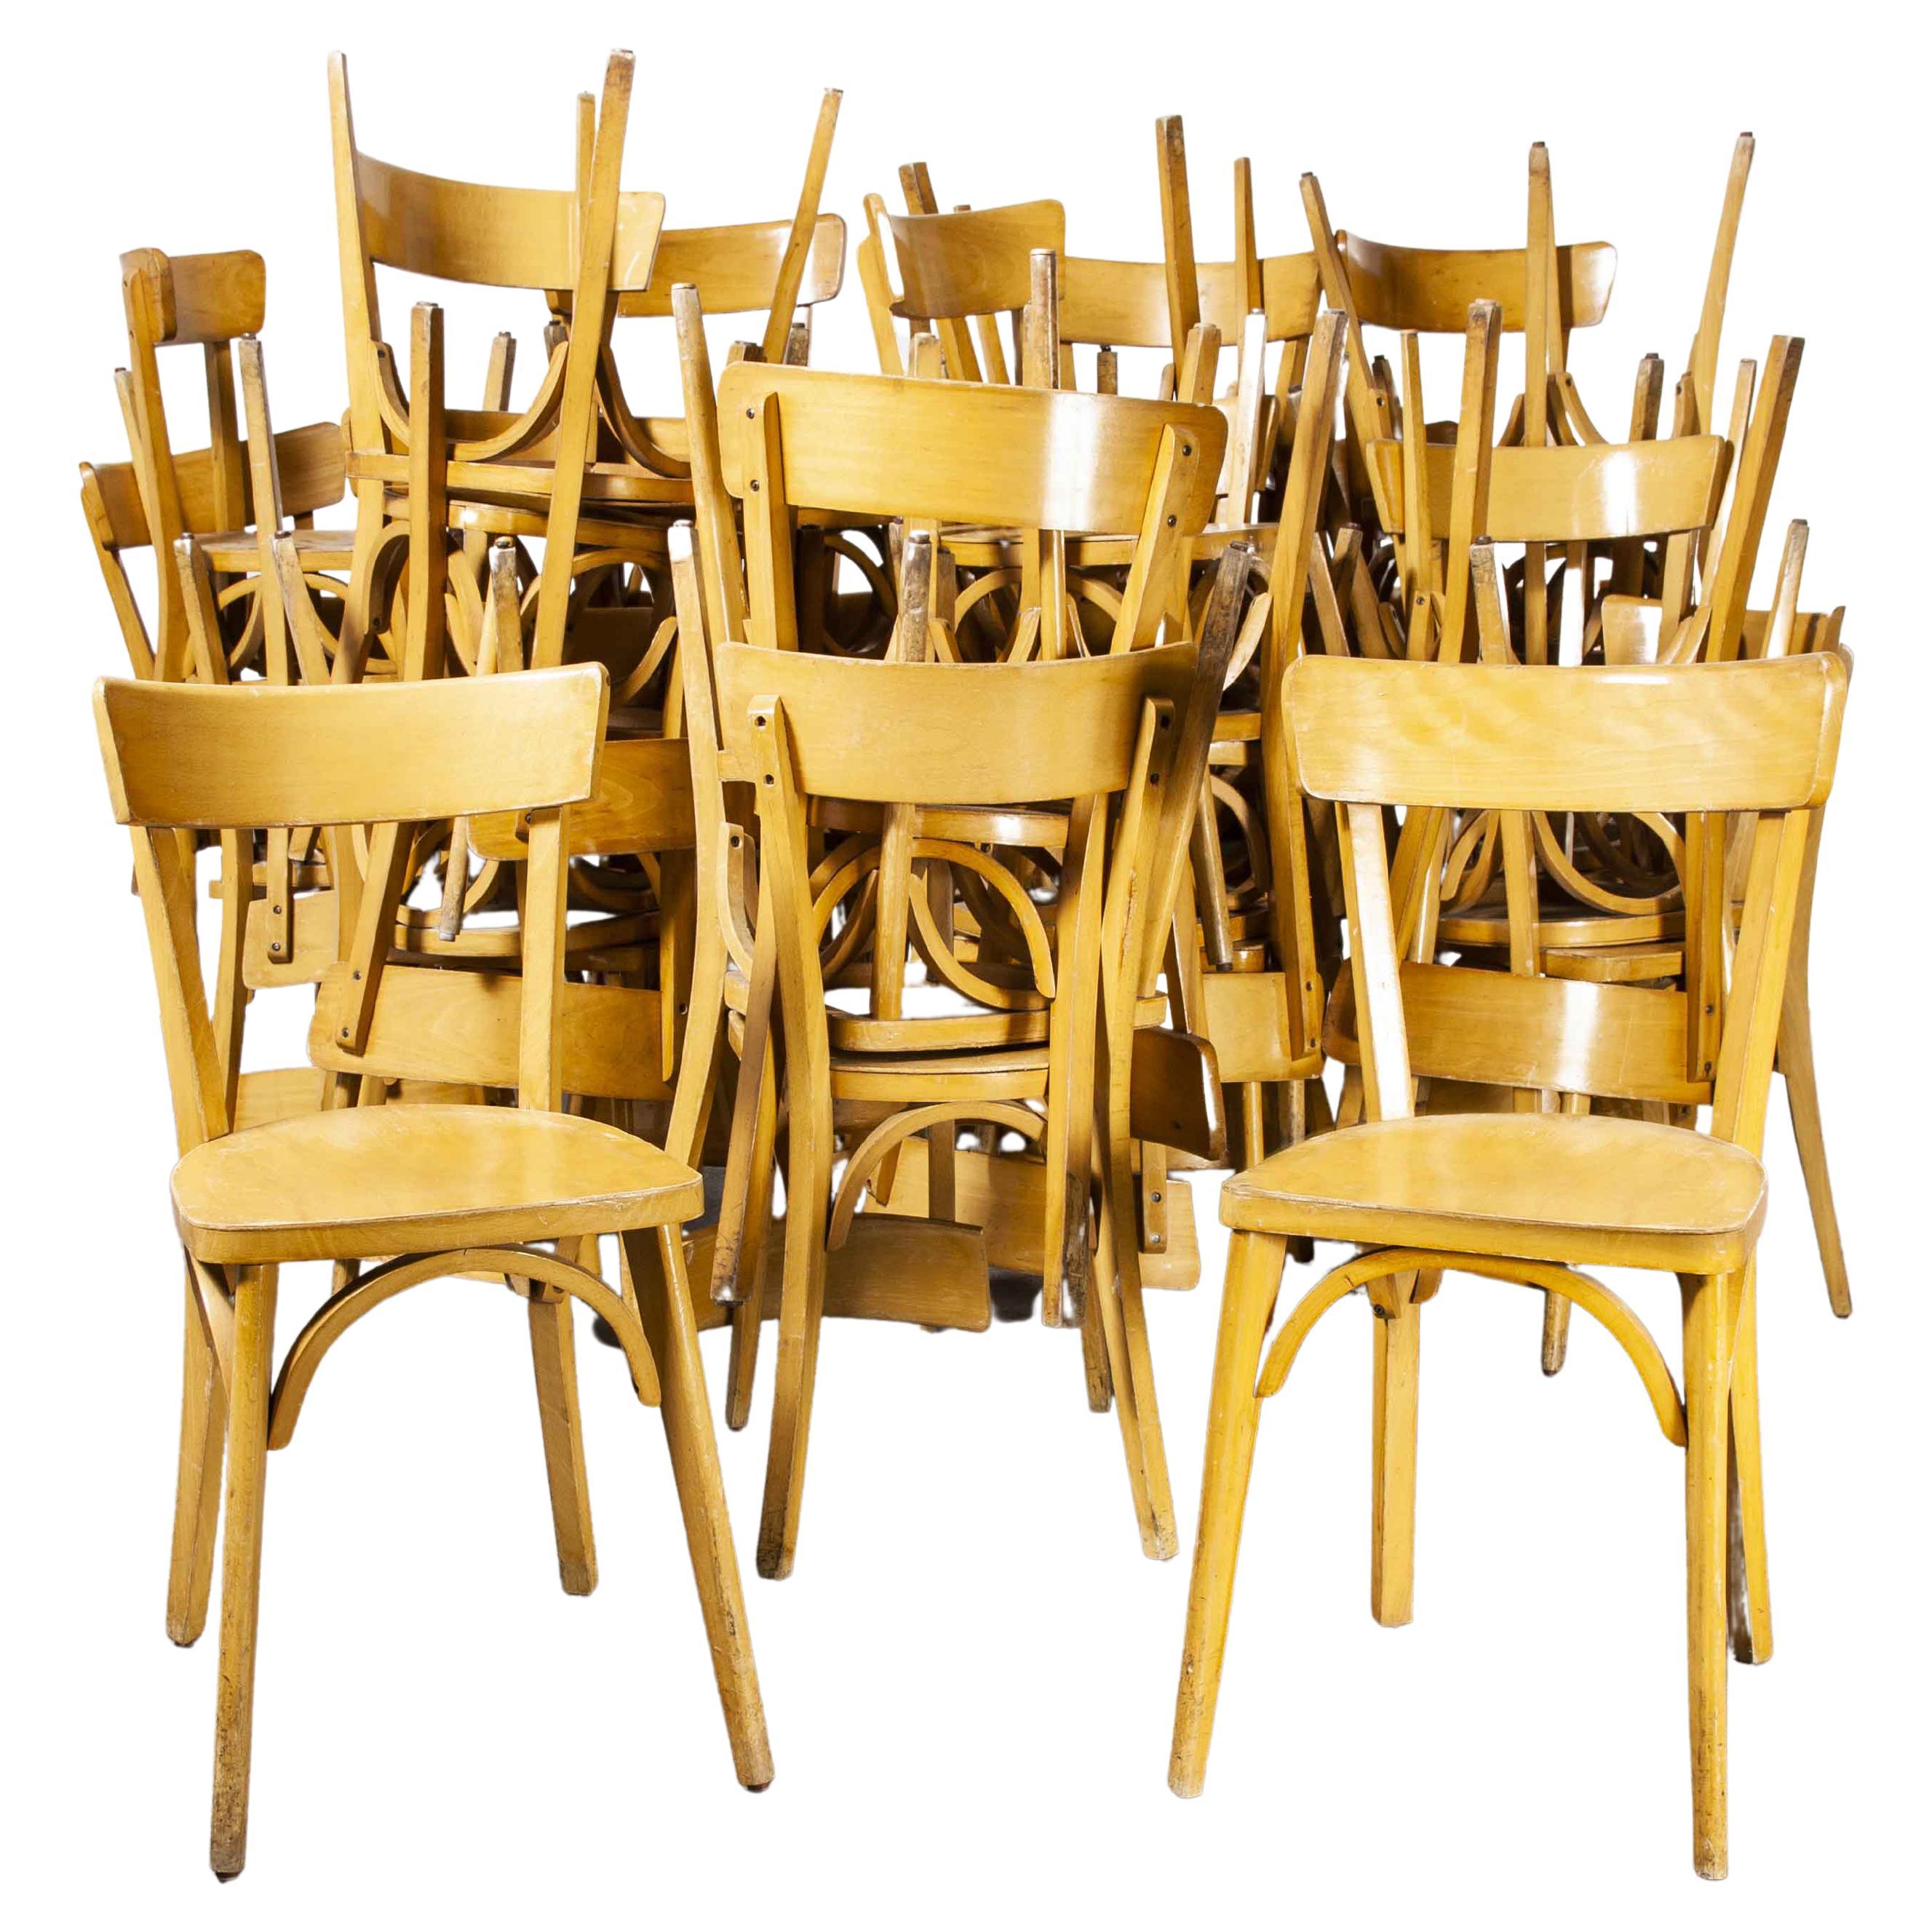 Chaises de salle à manger Luterma en bois courbé des années 1950, différentes quantités disponibles.